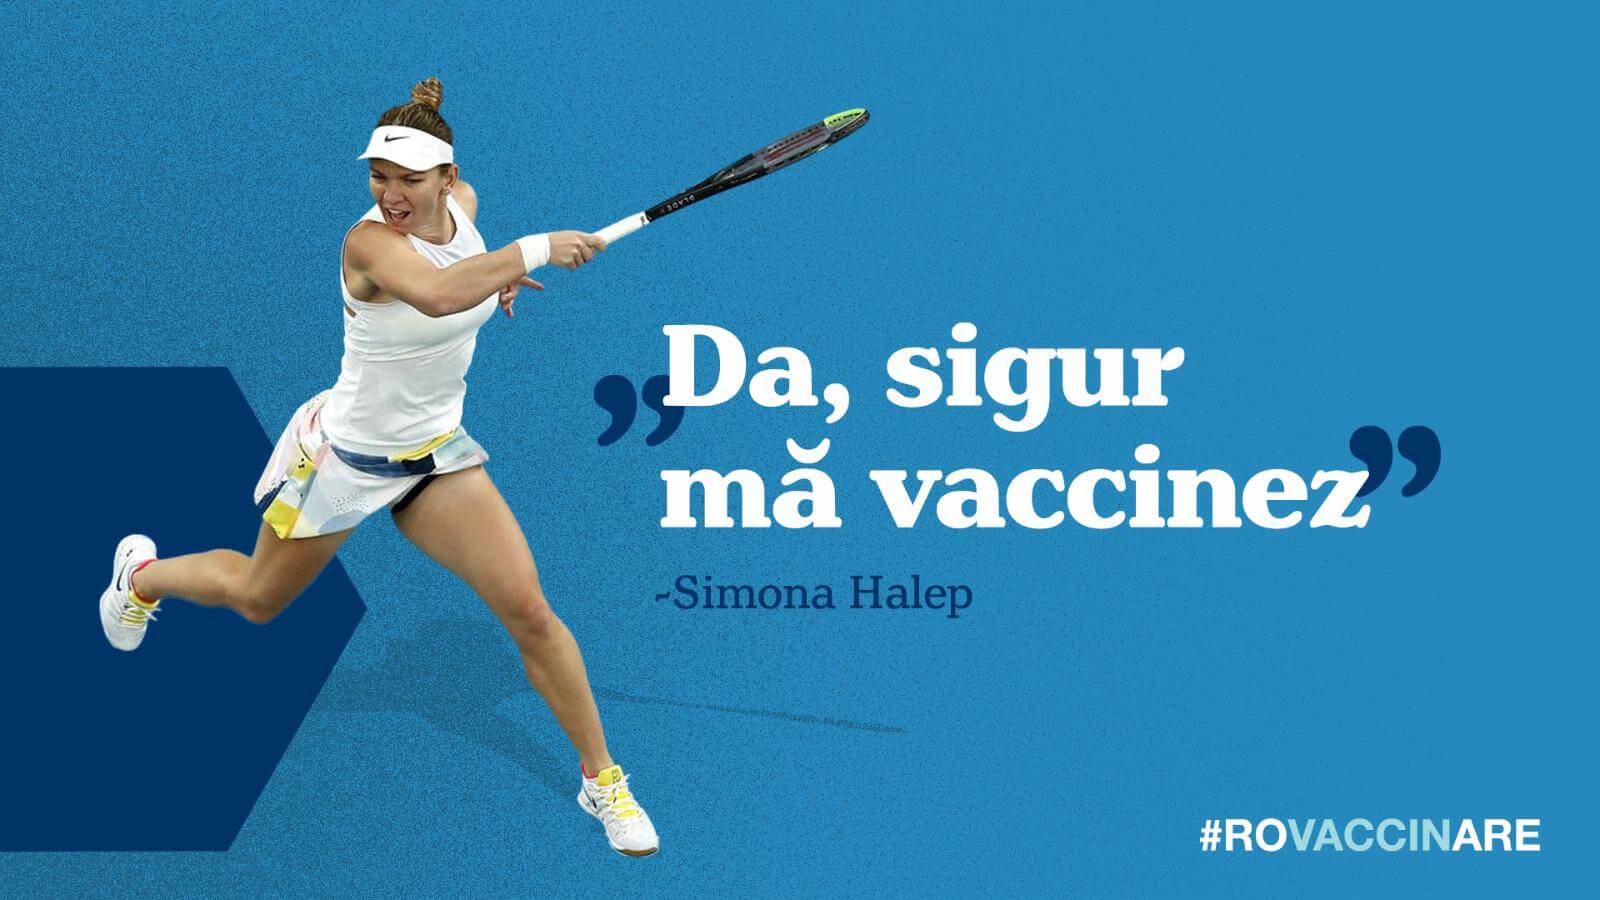 Nebunia e pe fața: Simona Halep anunță ca se vaccinează deși a avut boala - Razboiul Informational